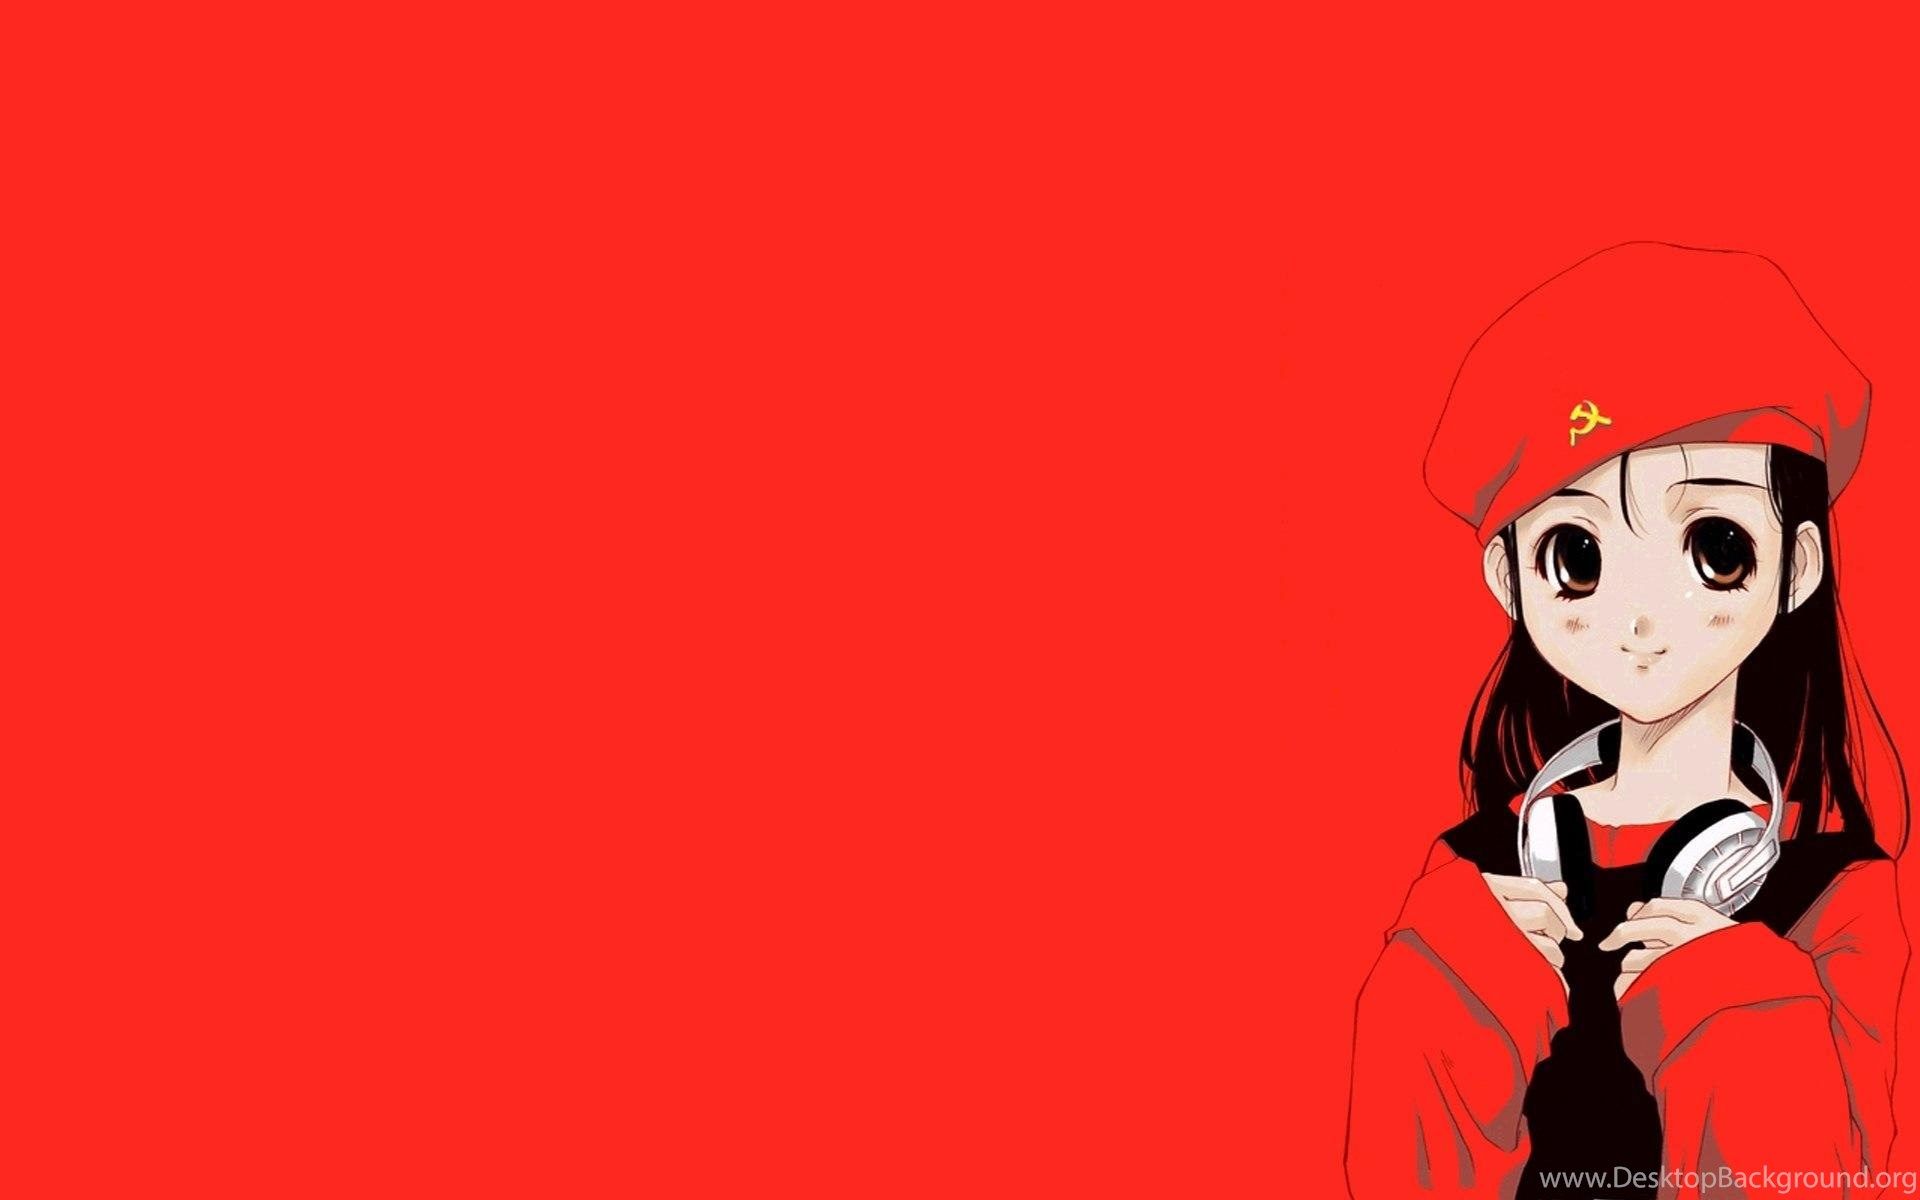 Cccp Ussr Anime Girl Headphones Red Flag Widescreen HD Wallpaper. Desktop Background